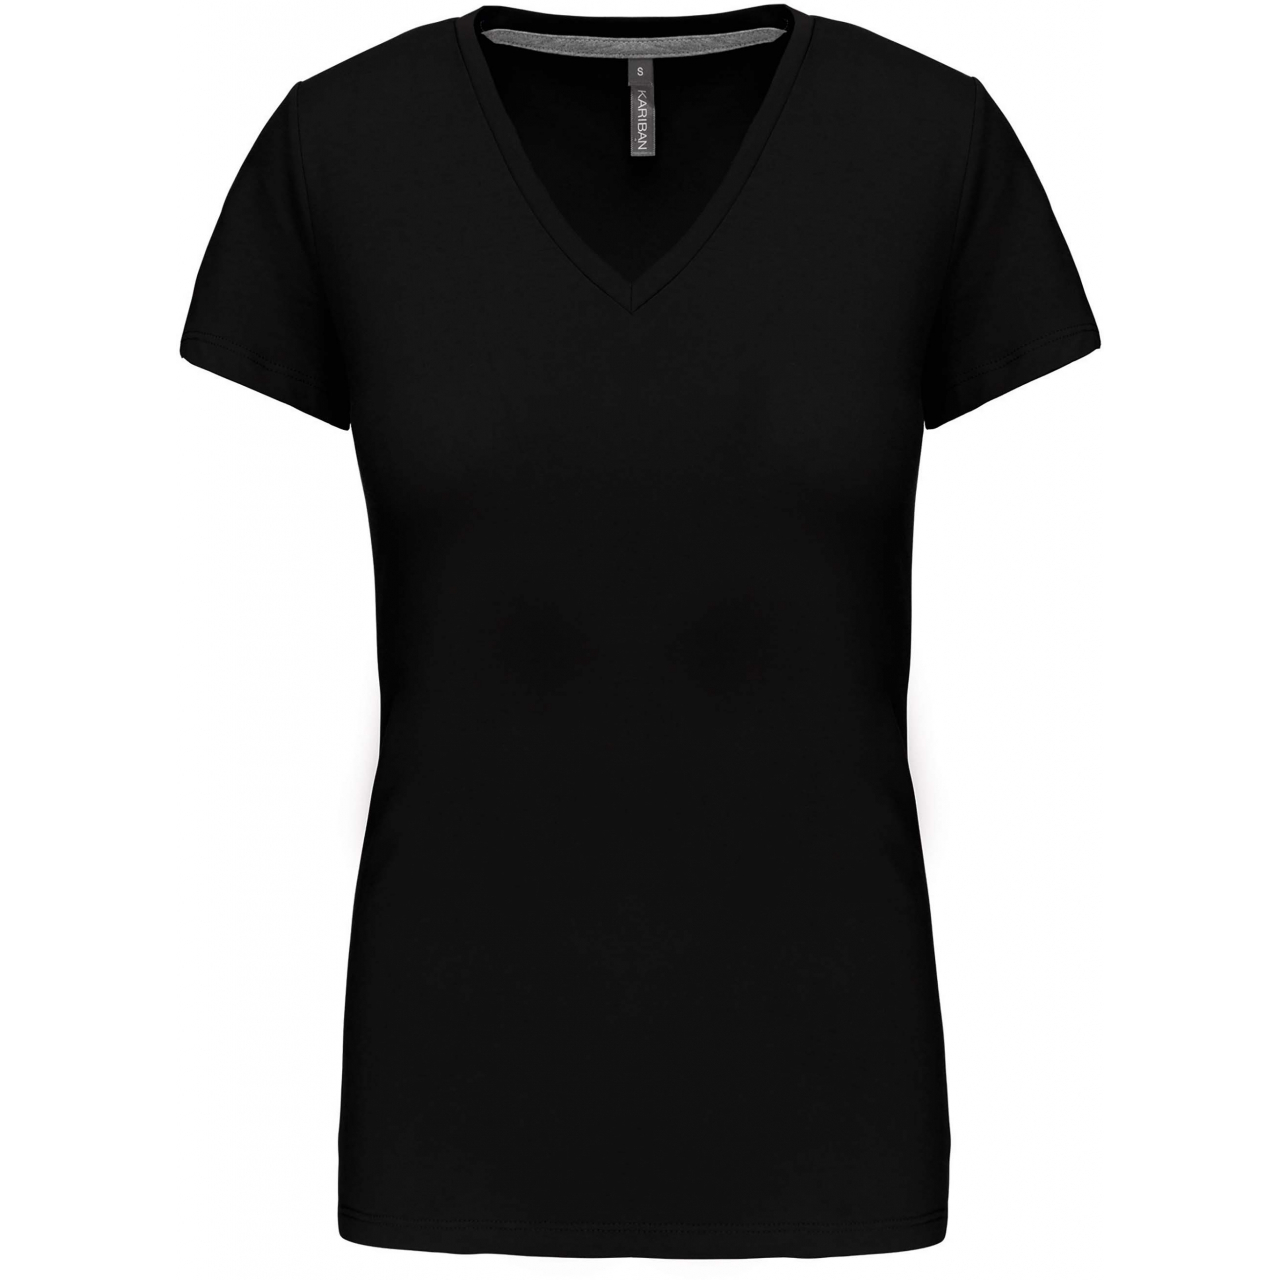 Dámské tričko Kariban V-neck s krátkým rukávem - černé, XXL